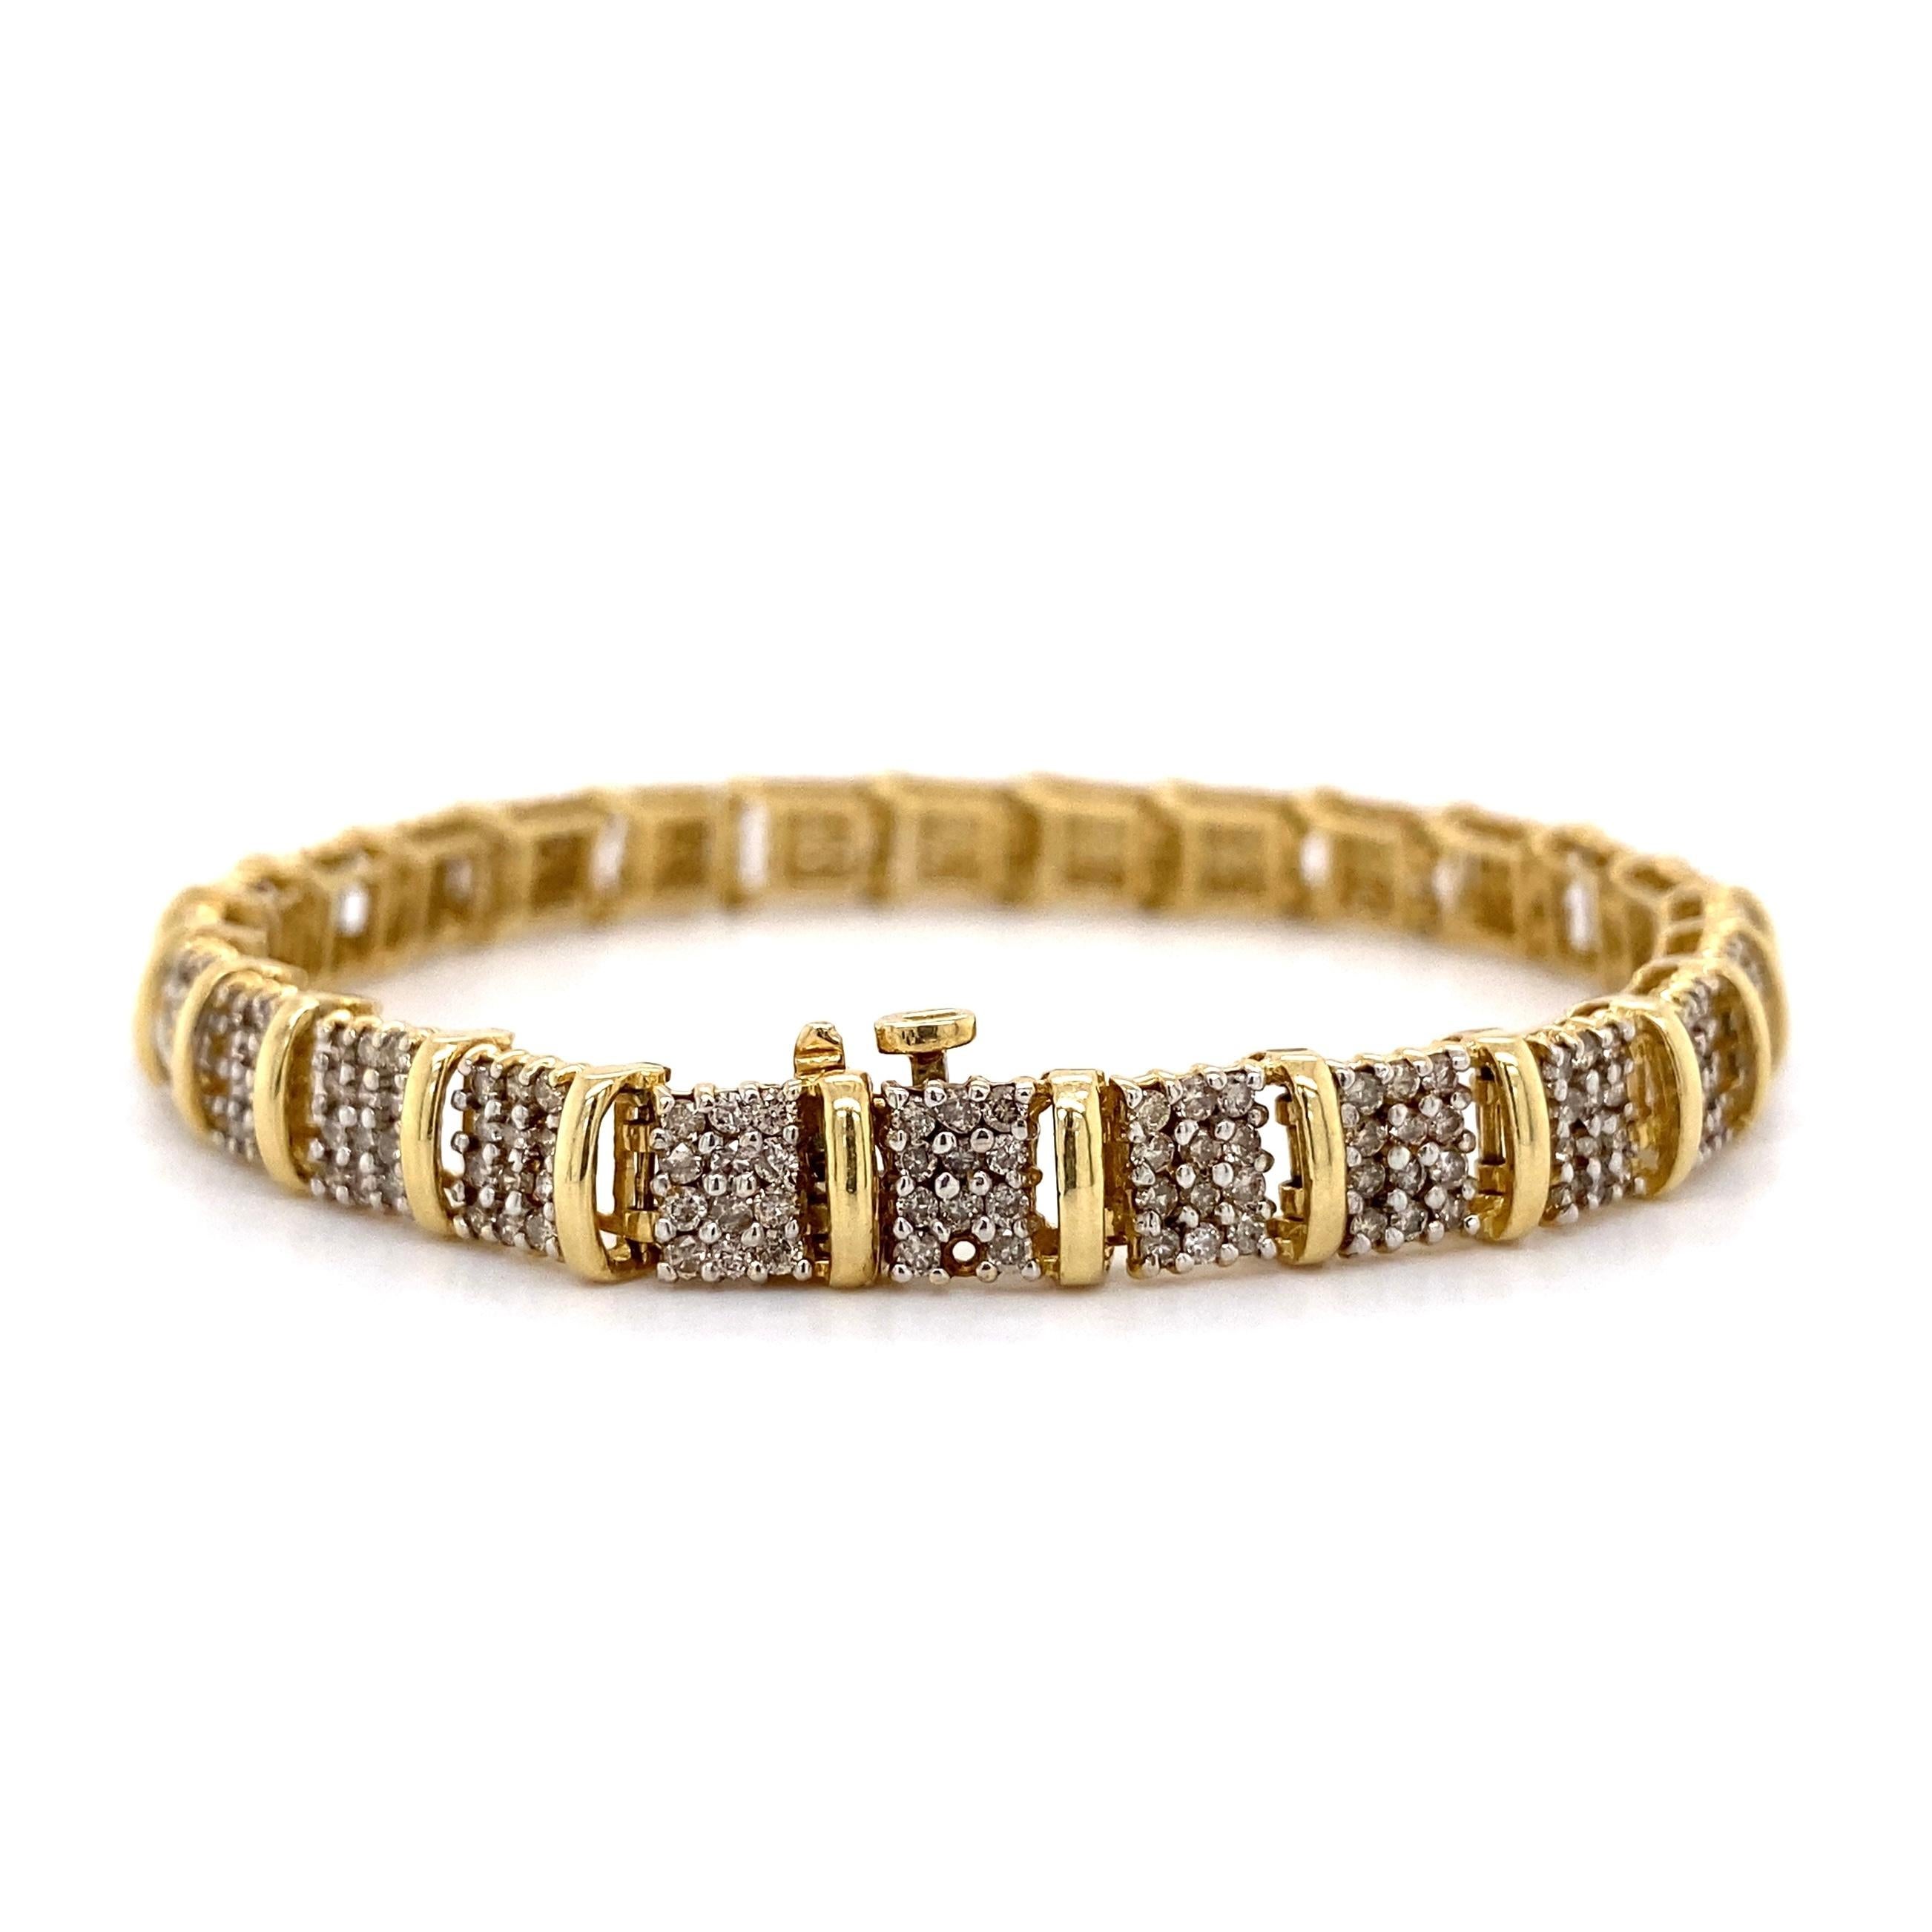 Brilliant Cut Diamond Gold Link Bracelet Estate Fine Jewelry For Sale